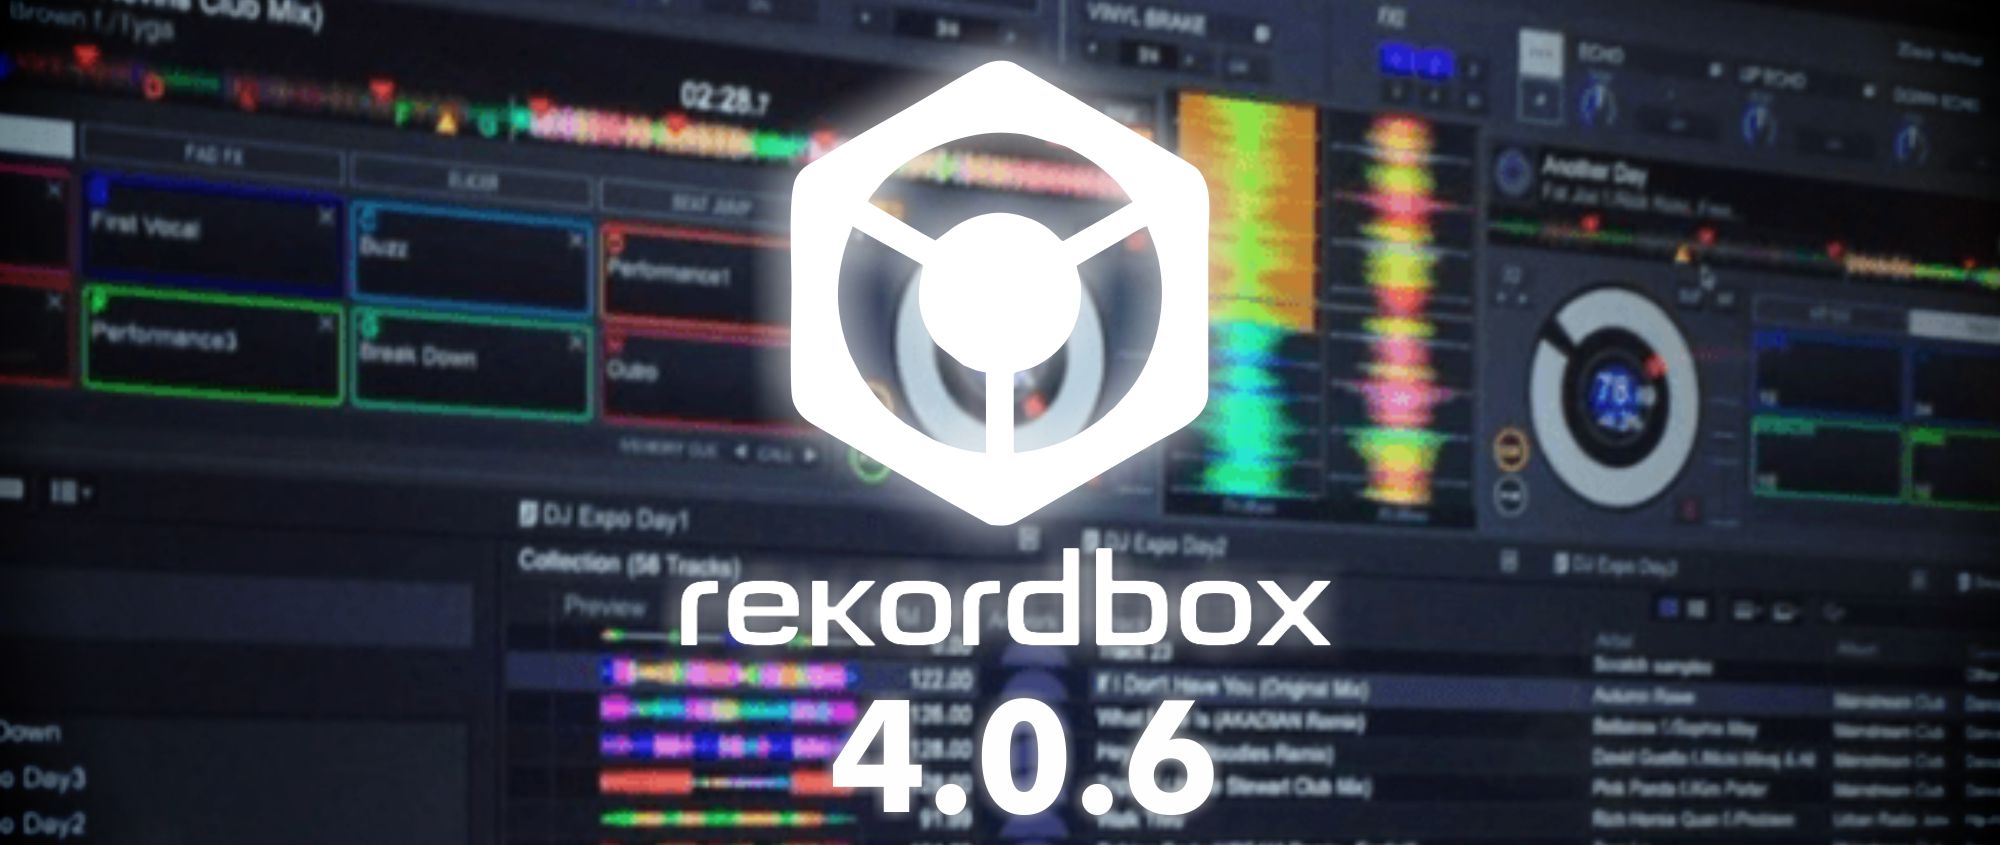 free instals Pioneer DJ rekordbox 6.7.4